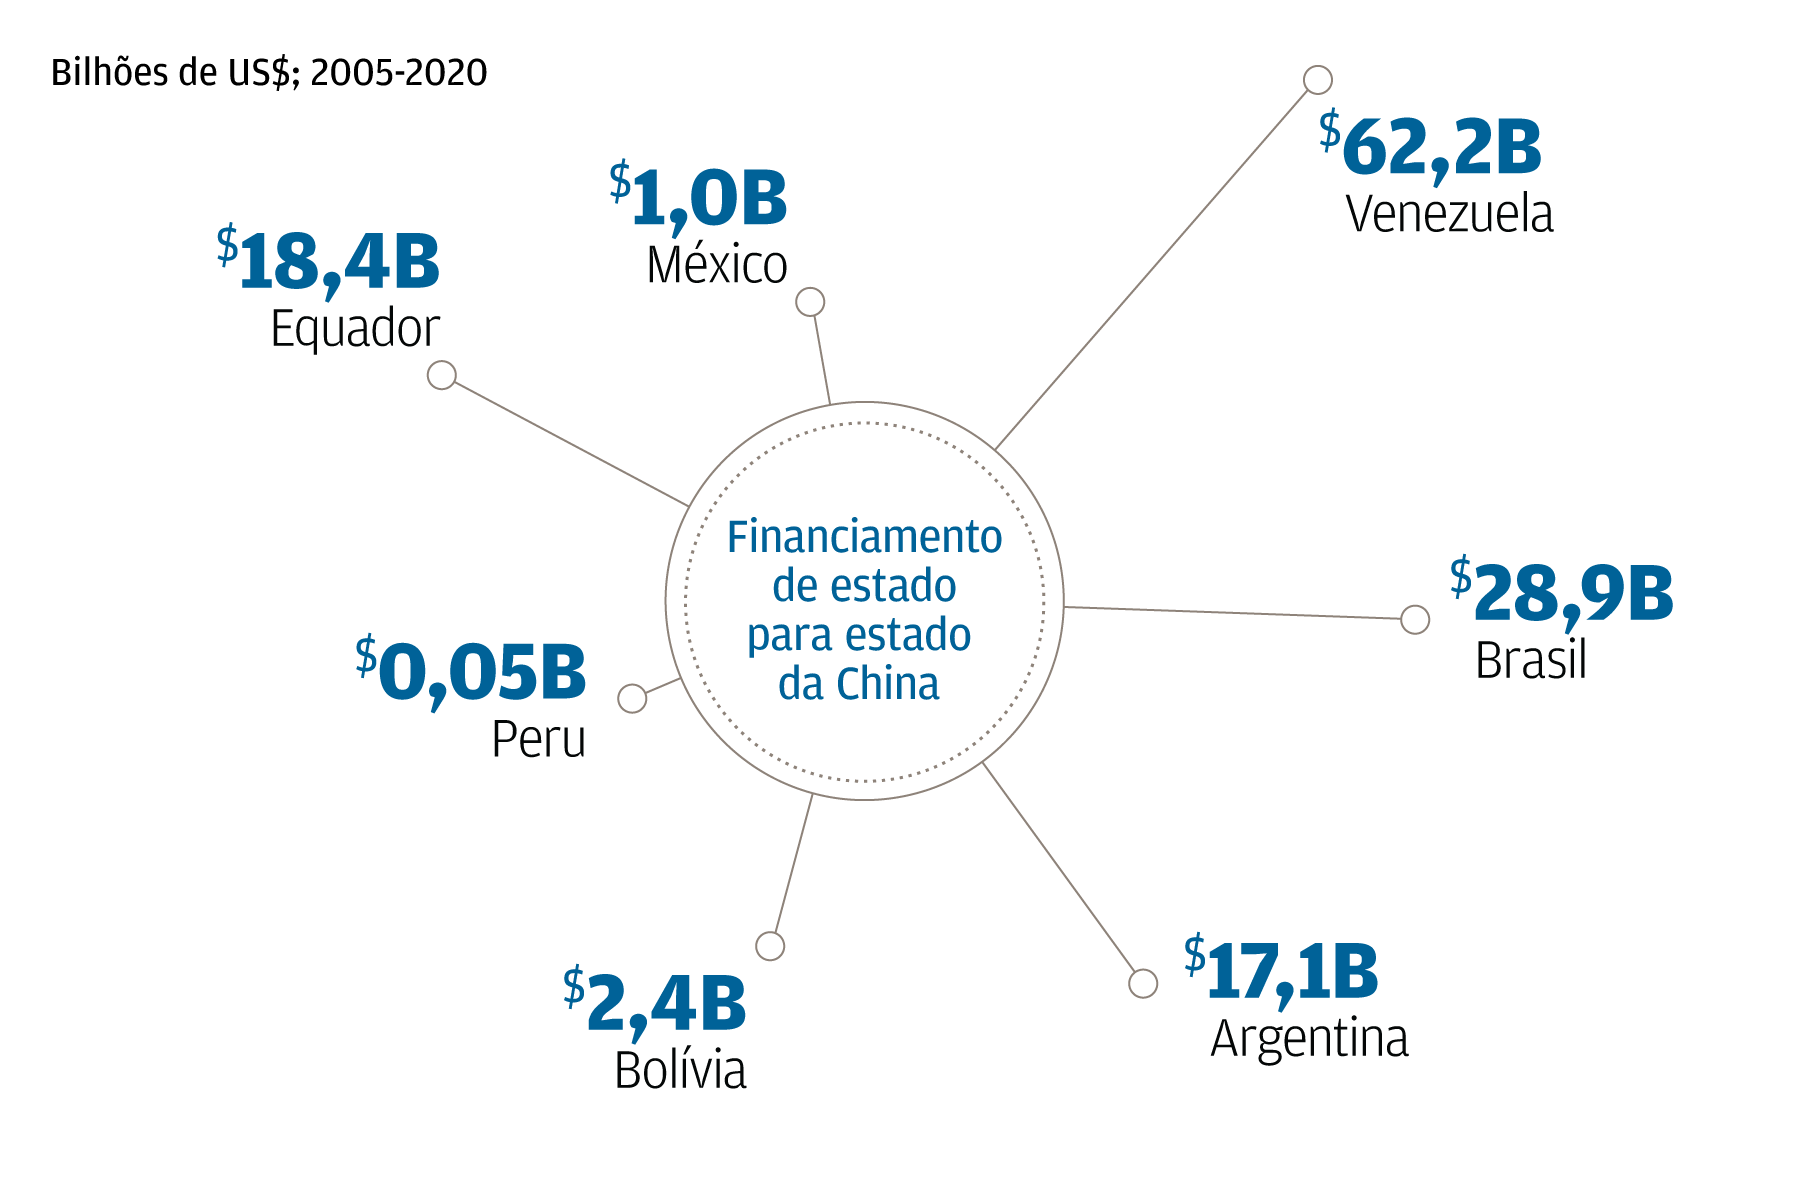 Um gráfico que ilustra o financiamento de estado-a-estado da China para países da América Latina de 2005 a 2020. A Venezuela recebeu $ 62,2 bilhões em empréstimos, o Brasil $ 28,9 bilhões, a Argentina $ 17,1 bilhões, a Bolívia $ 2,4 bilhões, o Peru $ 0,05 bilhões, o Equador $ 18,4 bilhões e o México $ 1,0 bilhões.